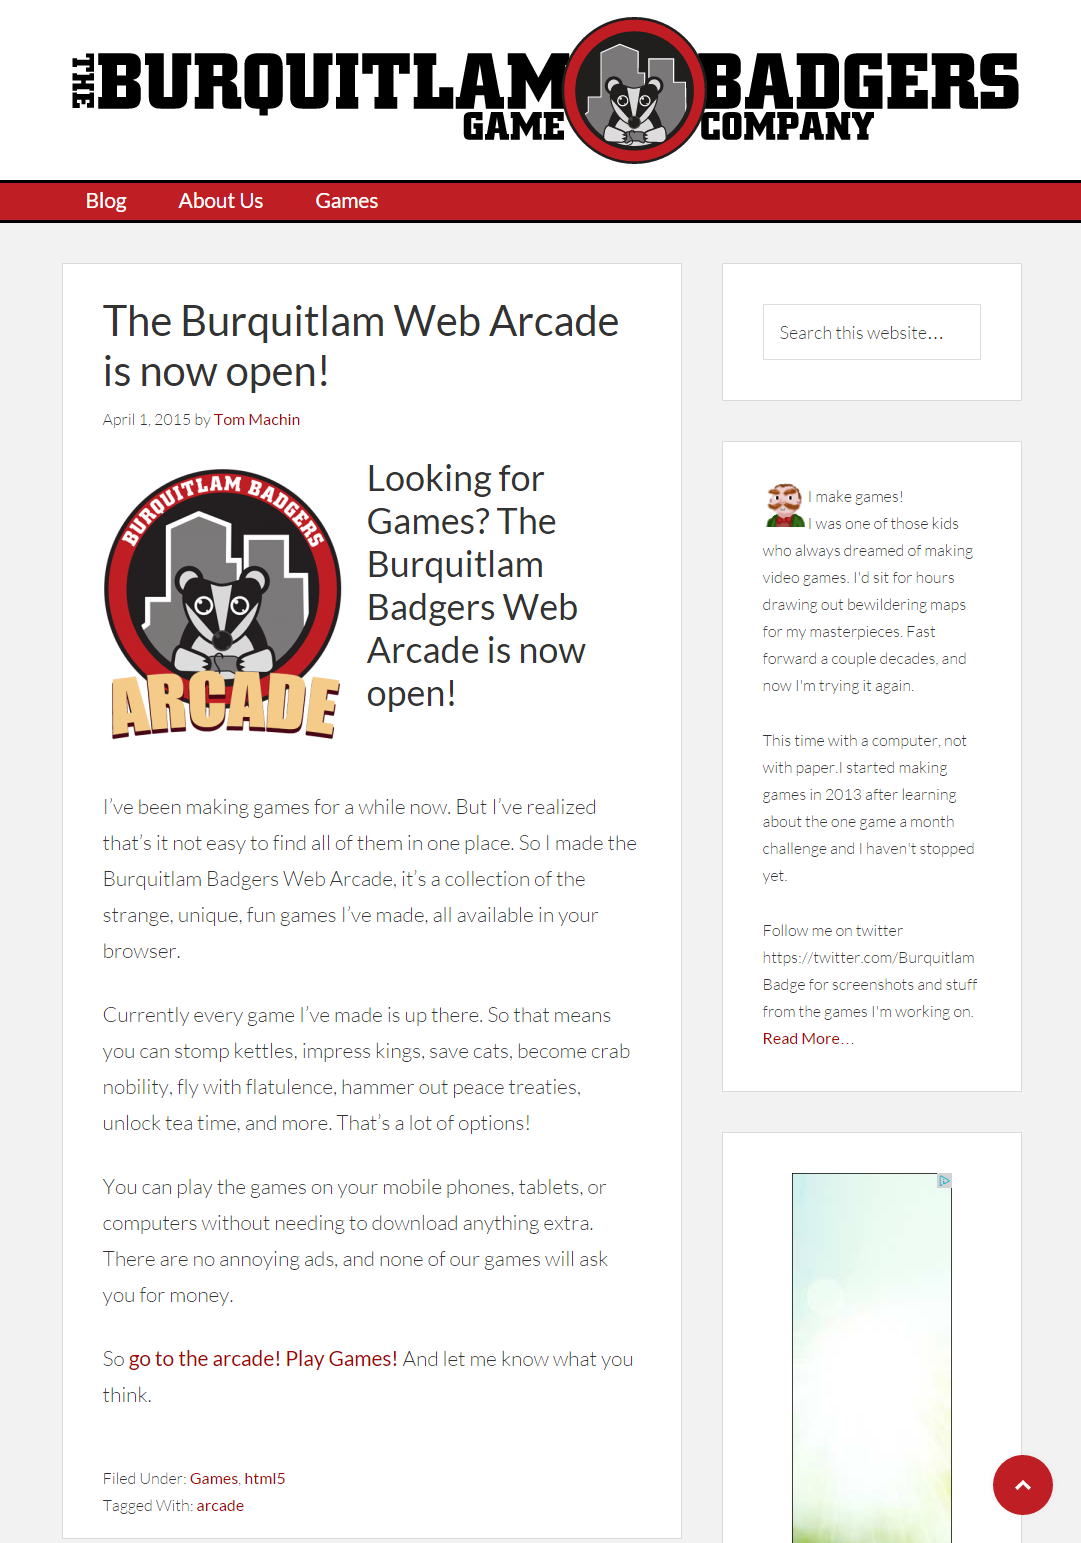 The Burquitlam Badgers Site